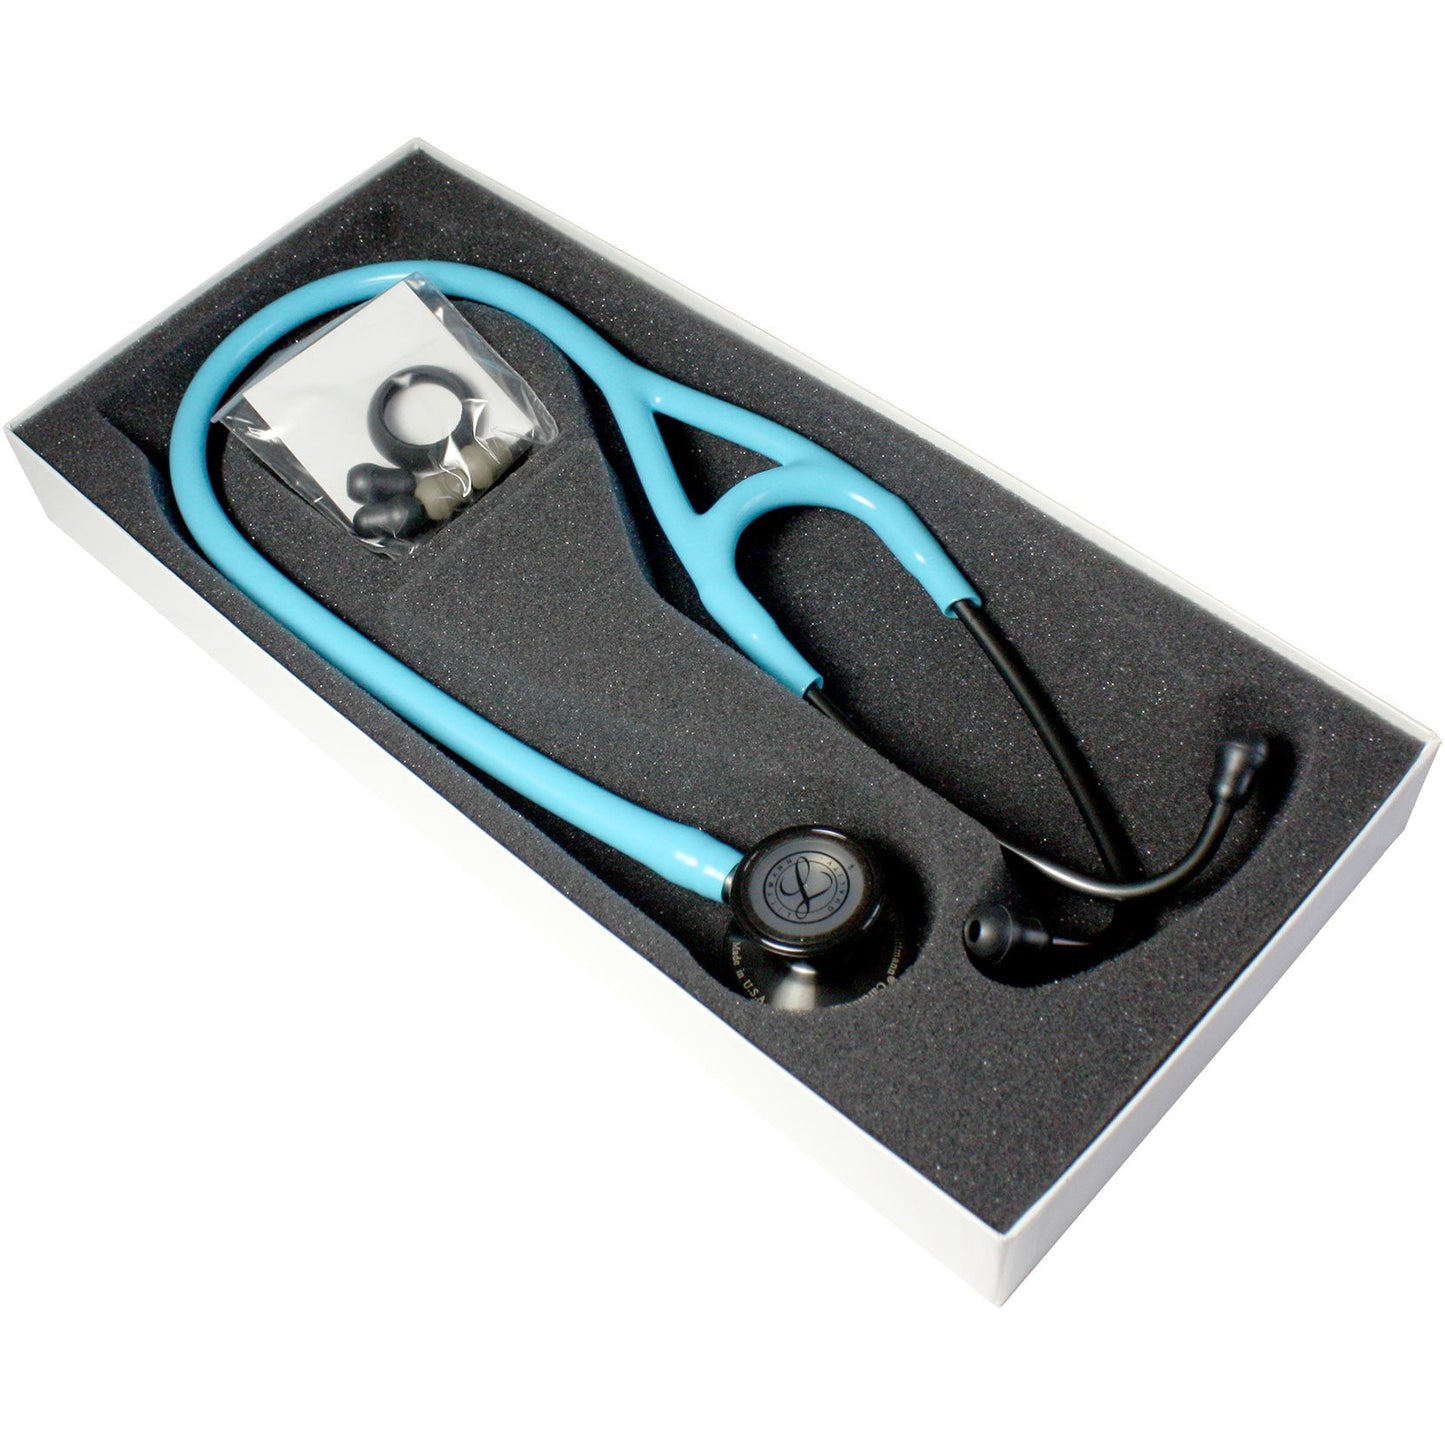 Littmann Cardiology III Stethoscope: Turquoise & Smoke 3159